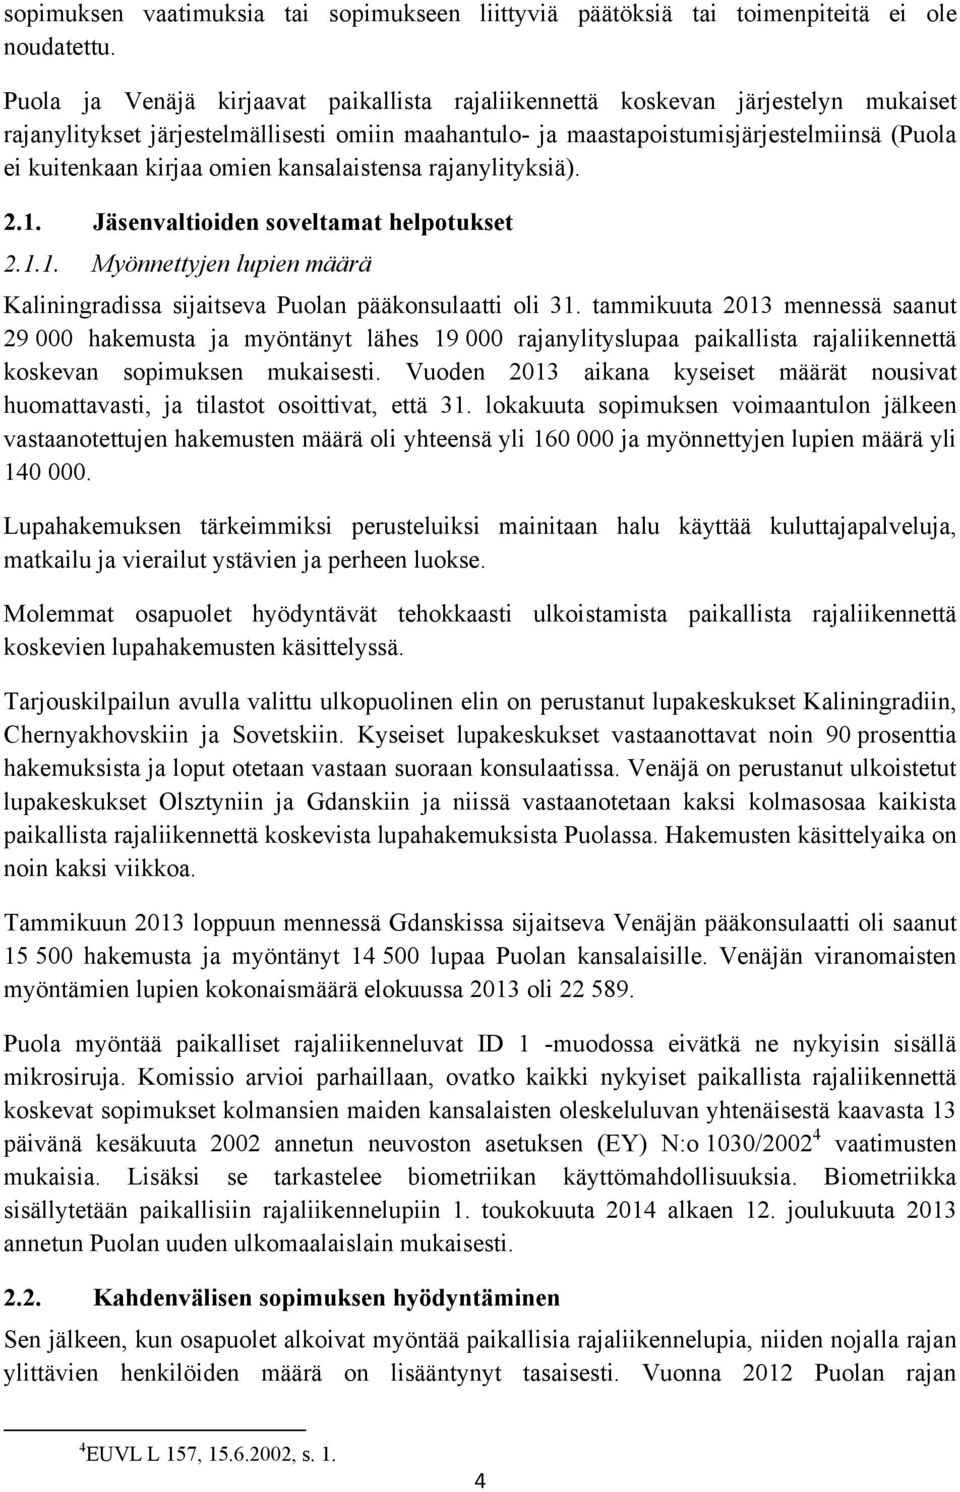 omien kansalaistensa rajanylityksiä). 2.1. Jäsenvaltioiden soveltamat helpotukset 2.1.1. Myönnettyjen lupien määrä Kaliningradissa sijaitseva Puolan pääkonsulaatti oli 31.